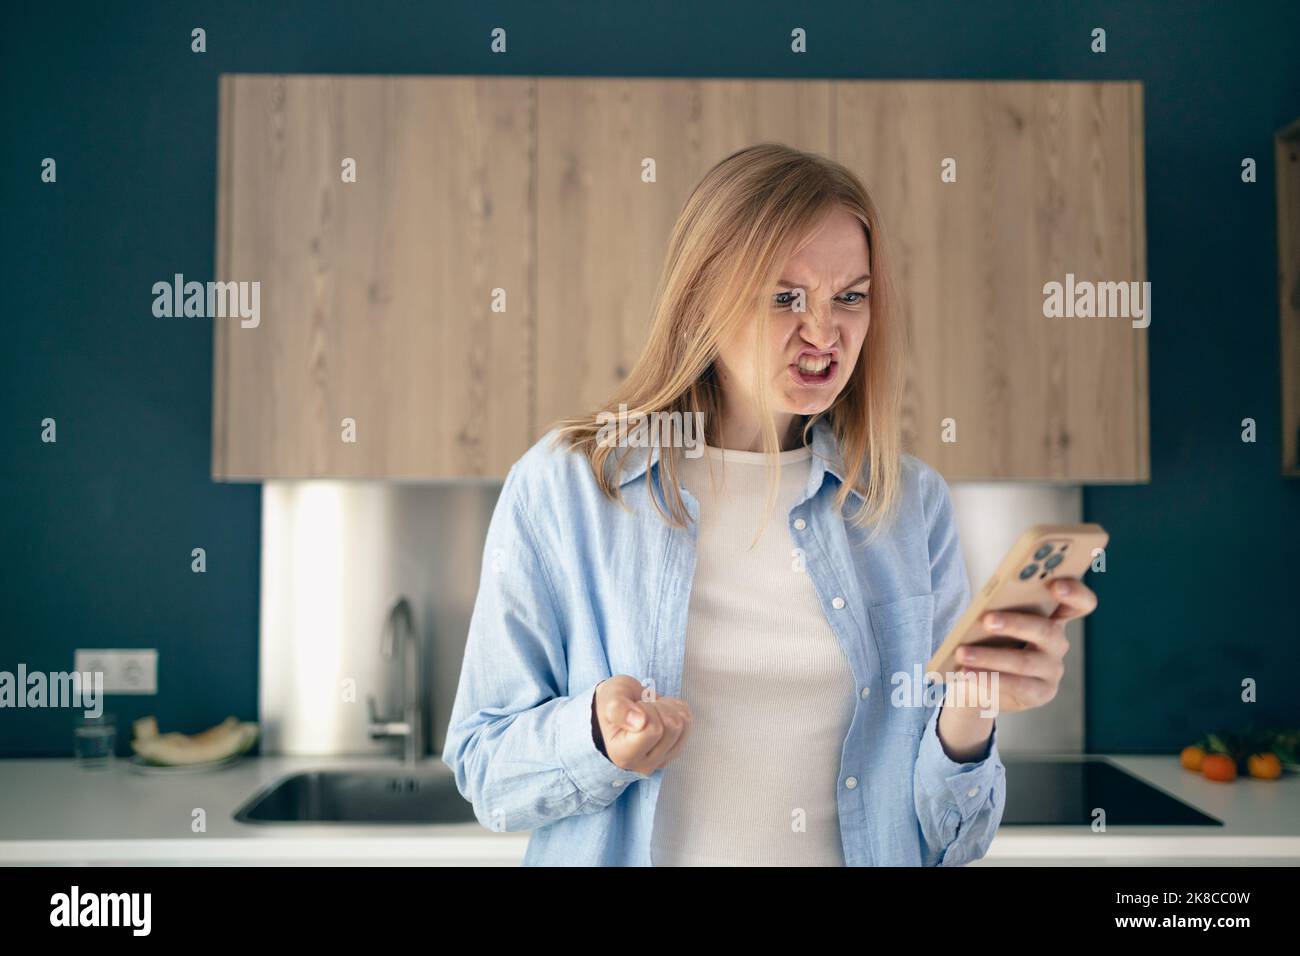 Unglücklich nervös junge Frau fühlen wütend verrückt nach Spamming in elektronischen Nachrichten auf dem Smartphone. Weibliche Kundin unzufrieden genervt nach dem Lesen albern Stockfoto